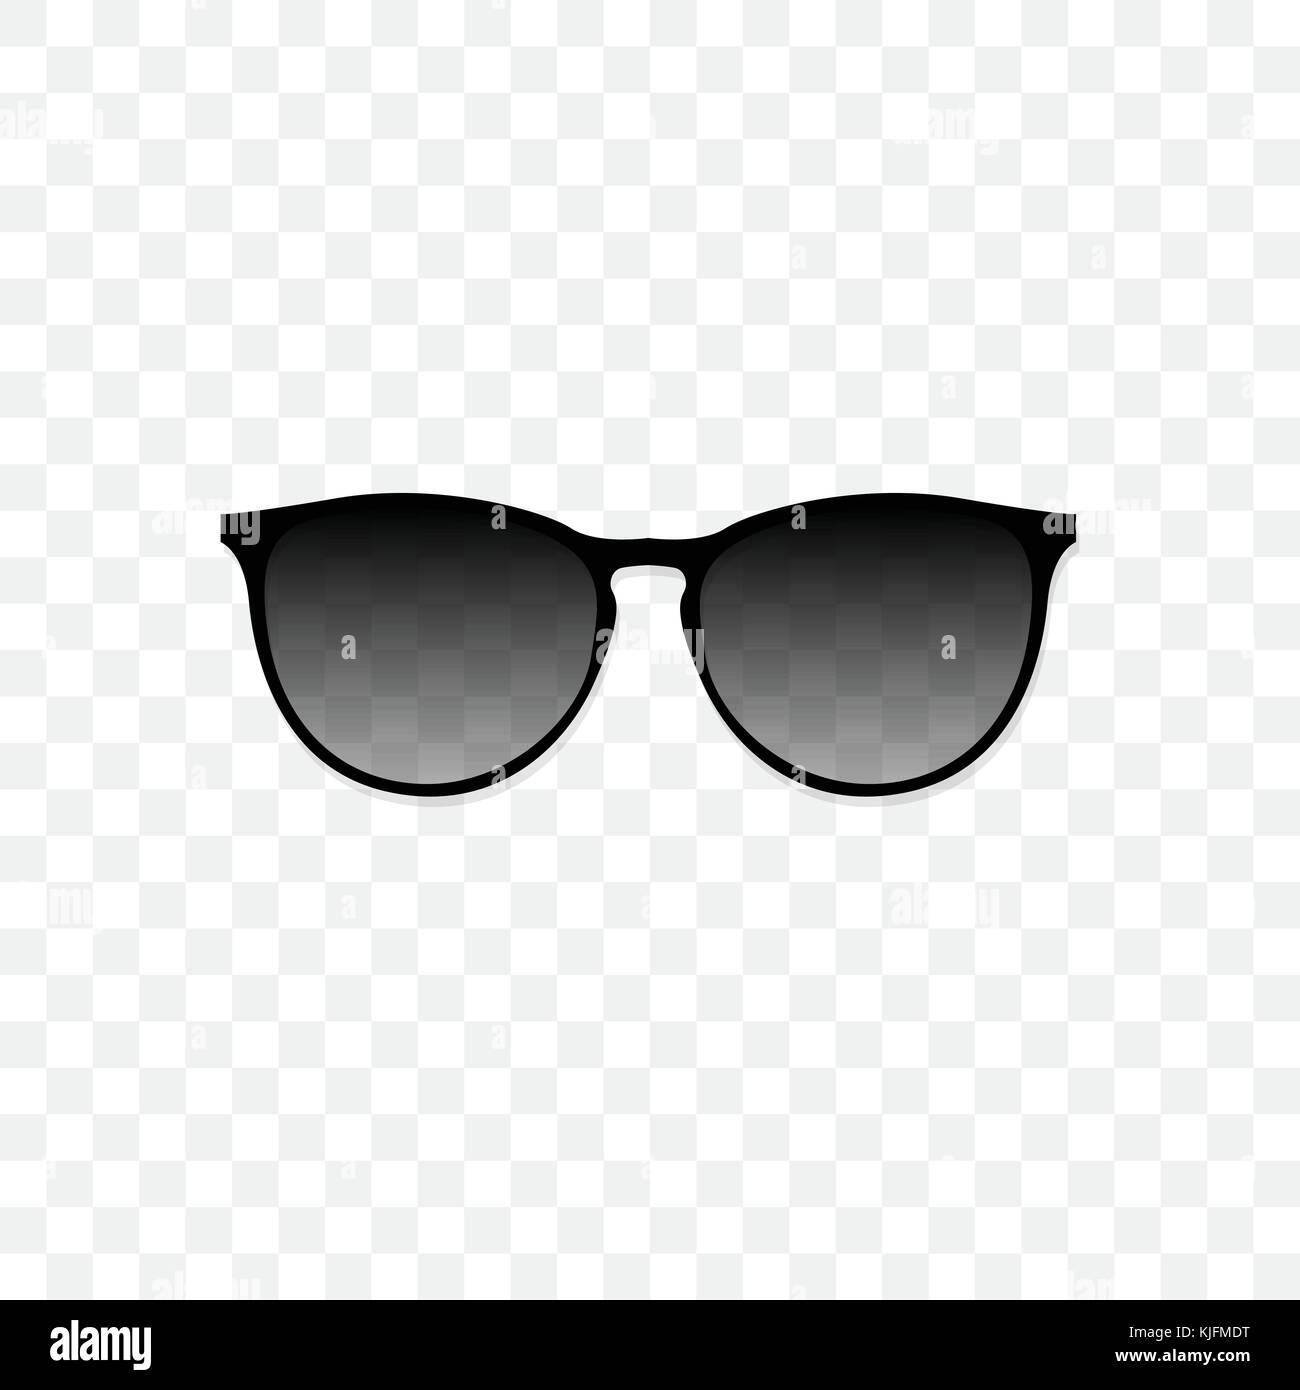 Realistische Sonnenbrille mit einem transparenten Schwarz Glas auf einen transparenten Hintergrund. Schutz vor Sonne und UV-Strahlen. Modeaccessoire Vector Illustration. Stock Vektor